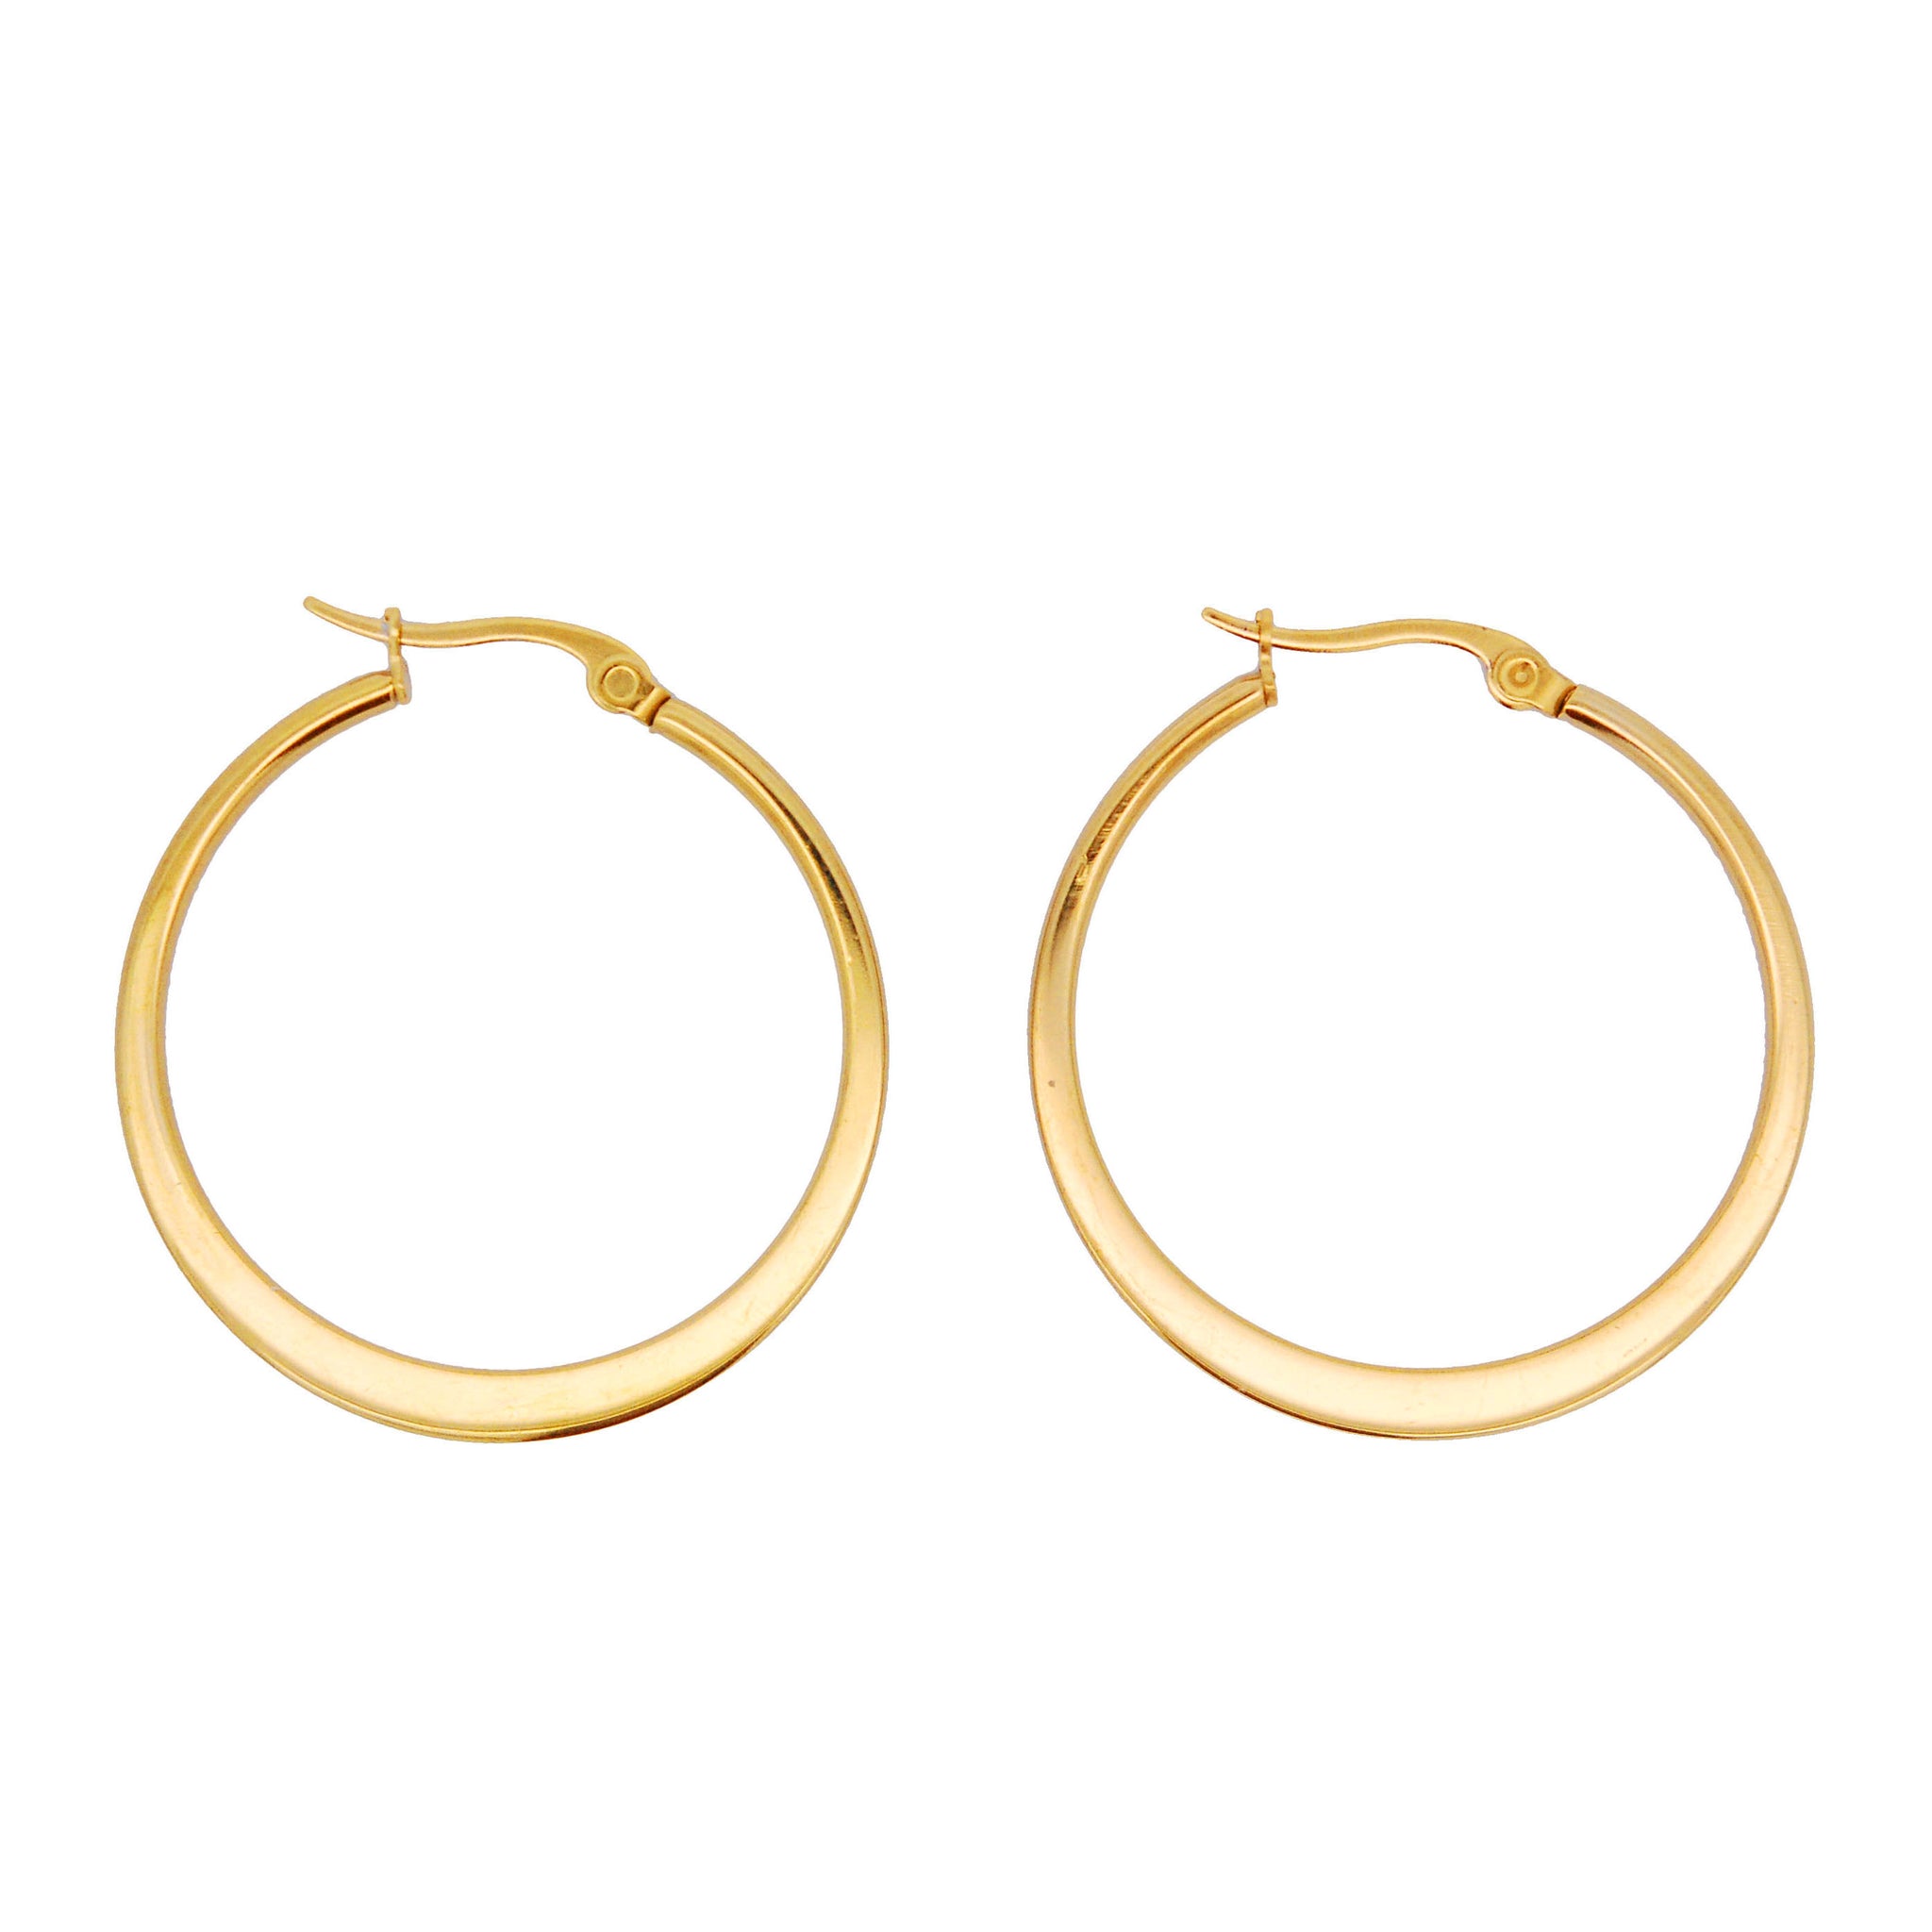 ESP 7611: Gold-Plated Flat Hoop Earrings (35mm)